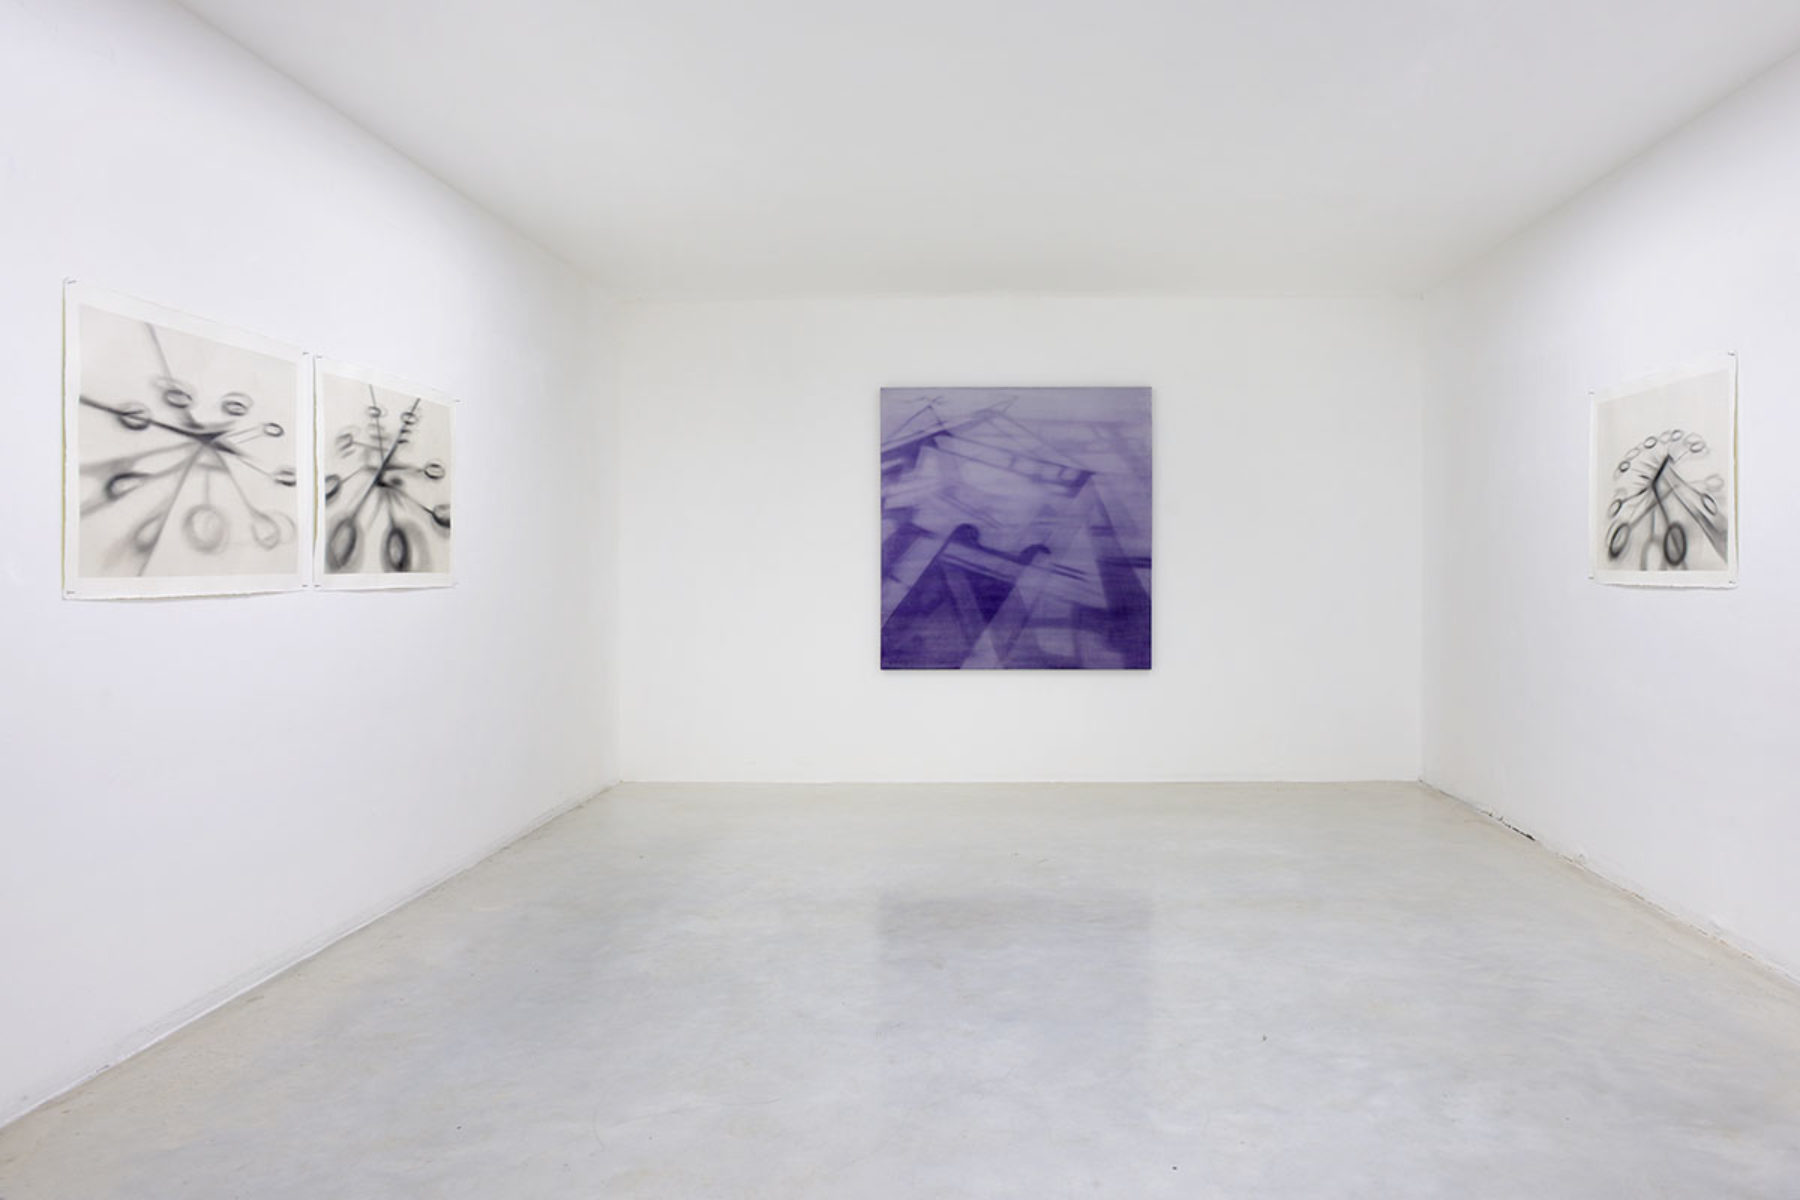 Antonio Marchetti Lamera, Tempo subìto, tempo anticipato, 2019, installation view, Studio la Città, Verona, ph. M.A. Sereni